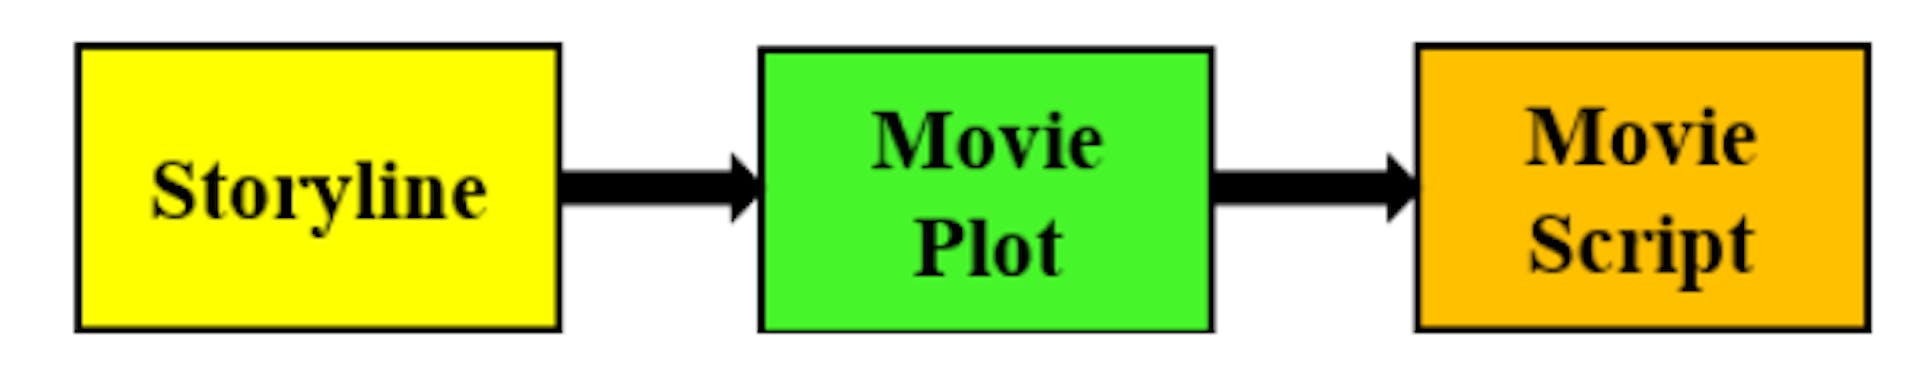 図 1: 脚本家が映画の脚本を作成する際にたどる思考プロセス。アイデア (ストーリーライン) がプロットにつながり、それが映画の脚本に変換されます。